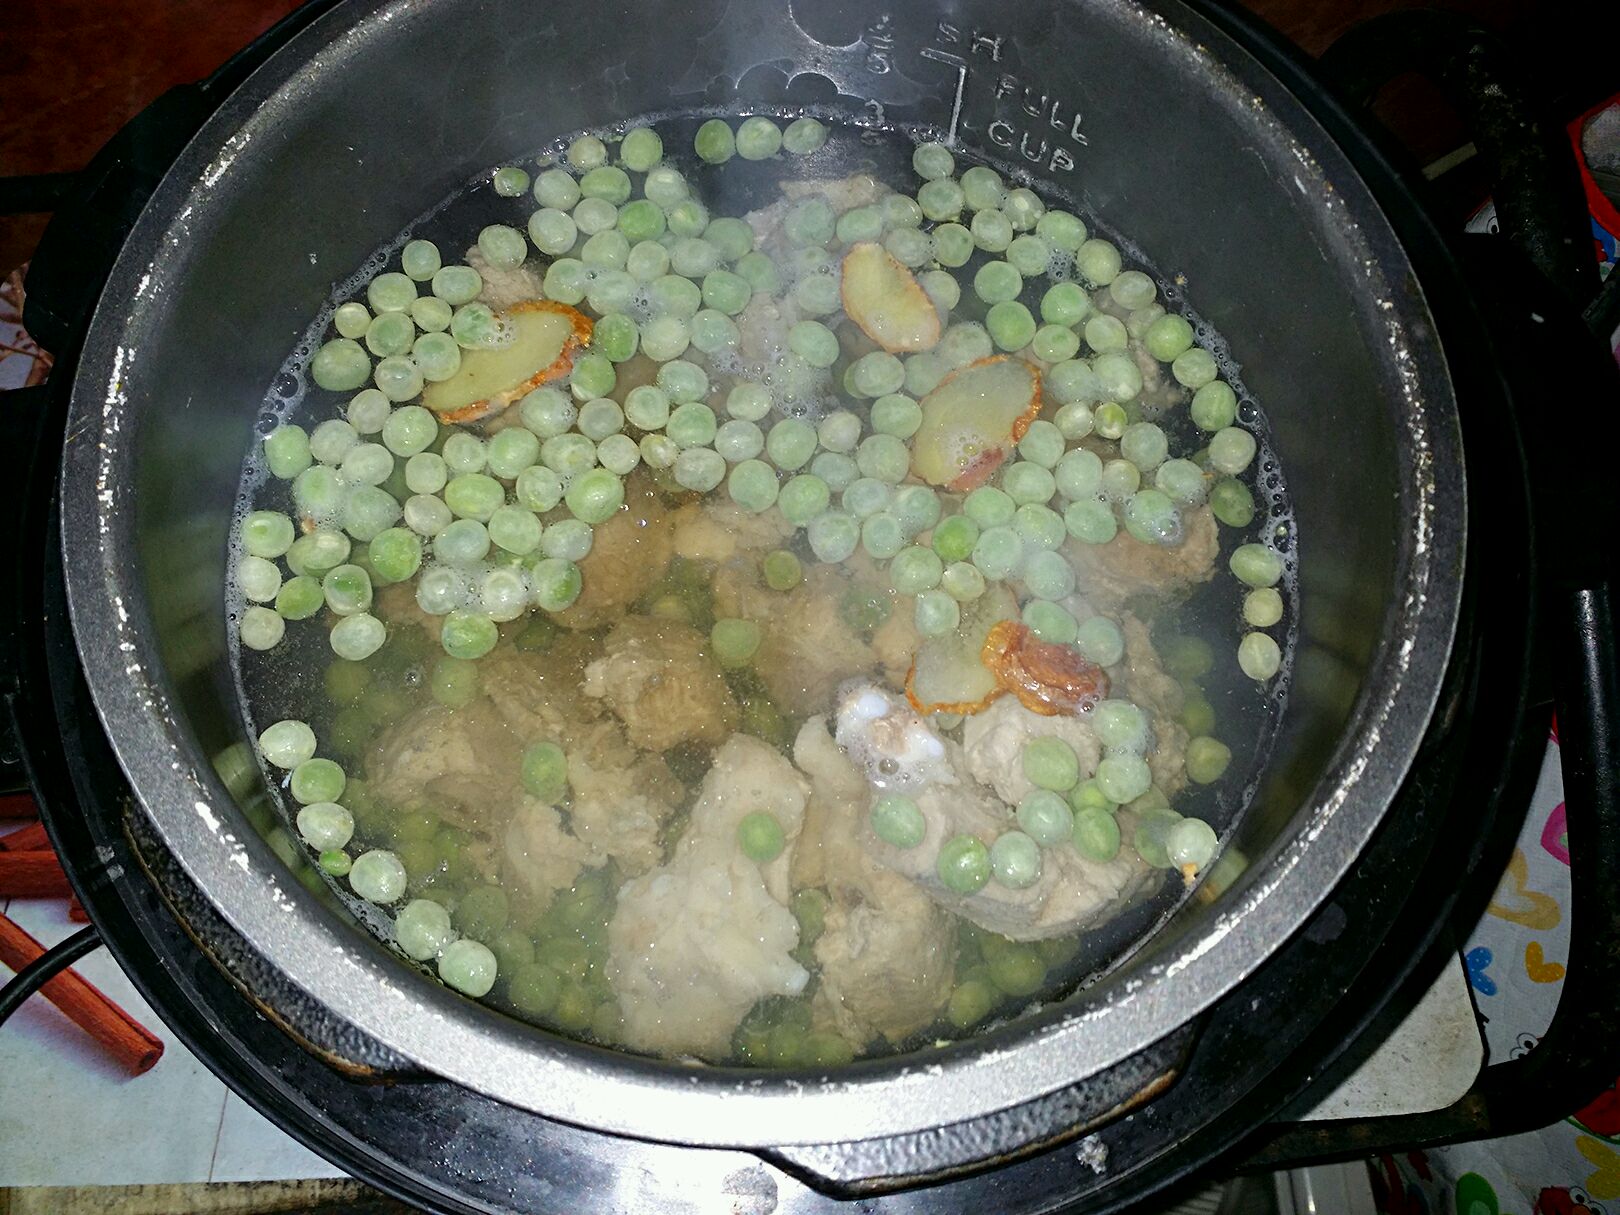 豌豆排骨汤怎么做_豌豆排骨汤的做法_蒋蒋厨房_豆果美食